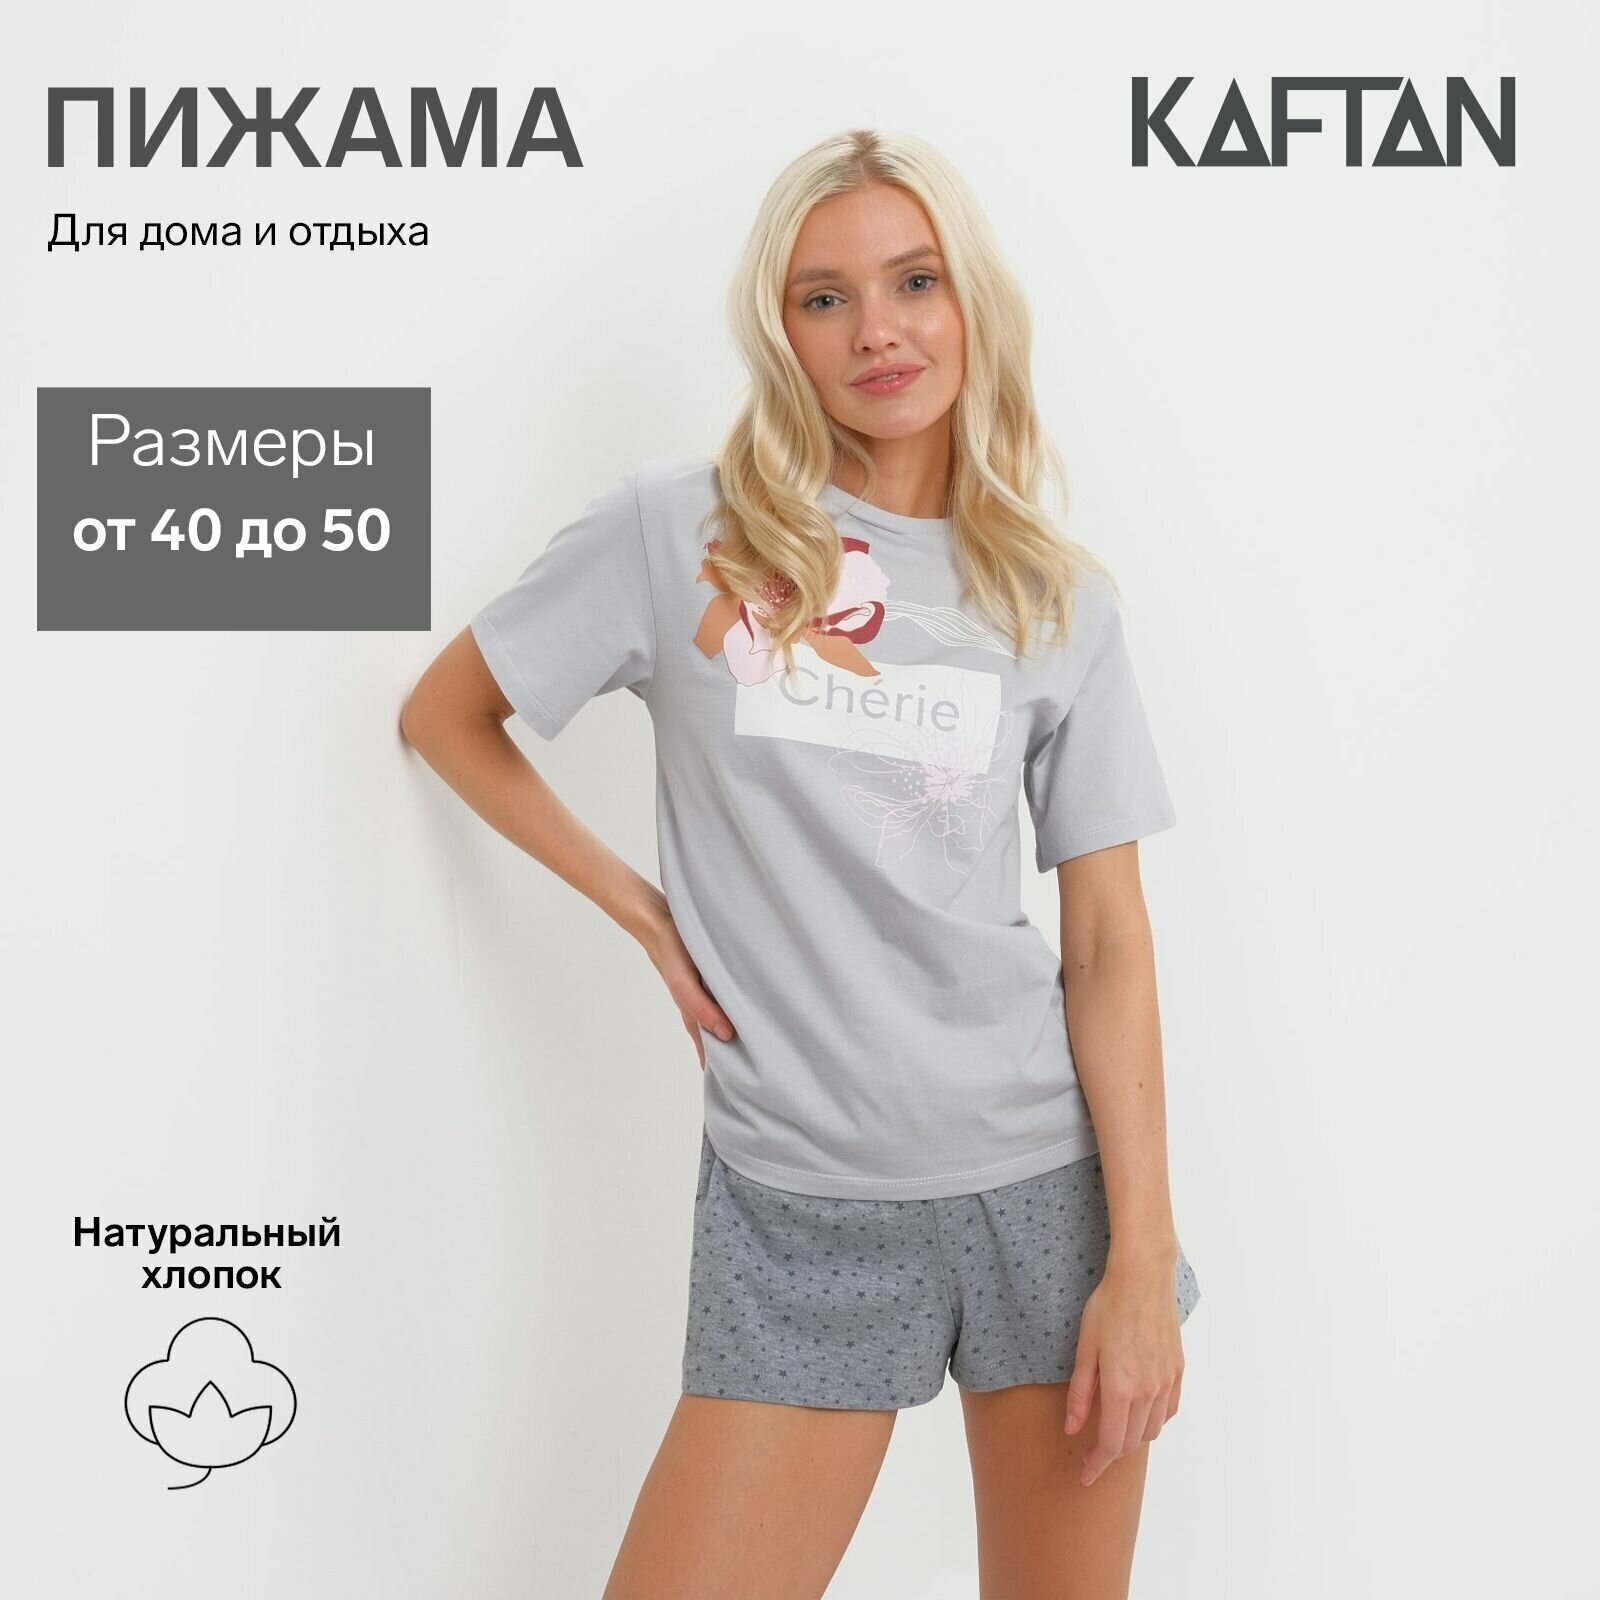 Пижама женская (футболка и шорты) KAFTAN "Cherie" р. 44-46 - фотография № 1